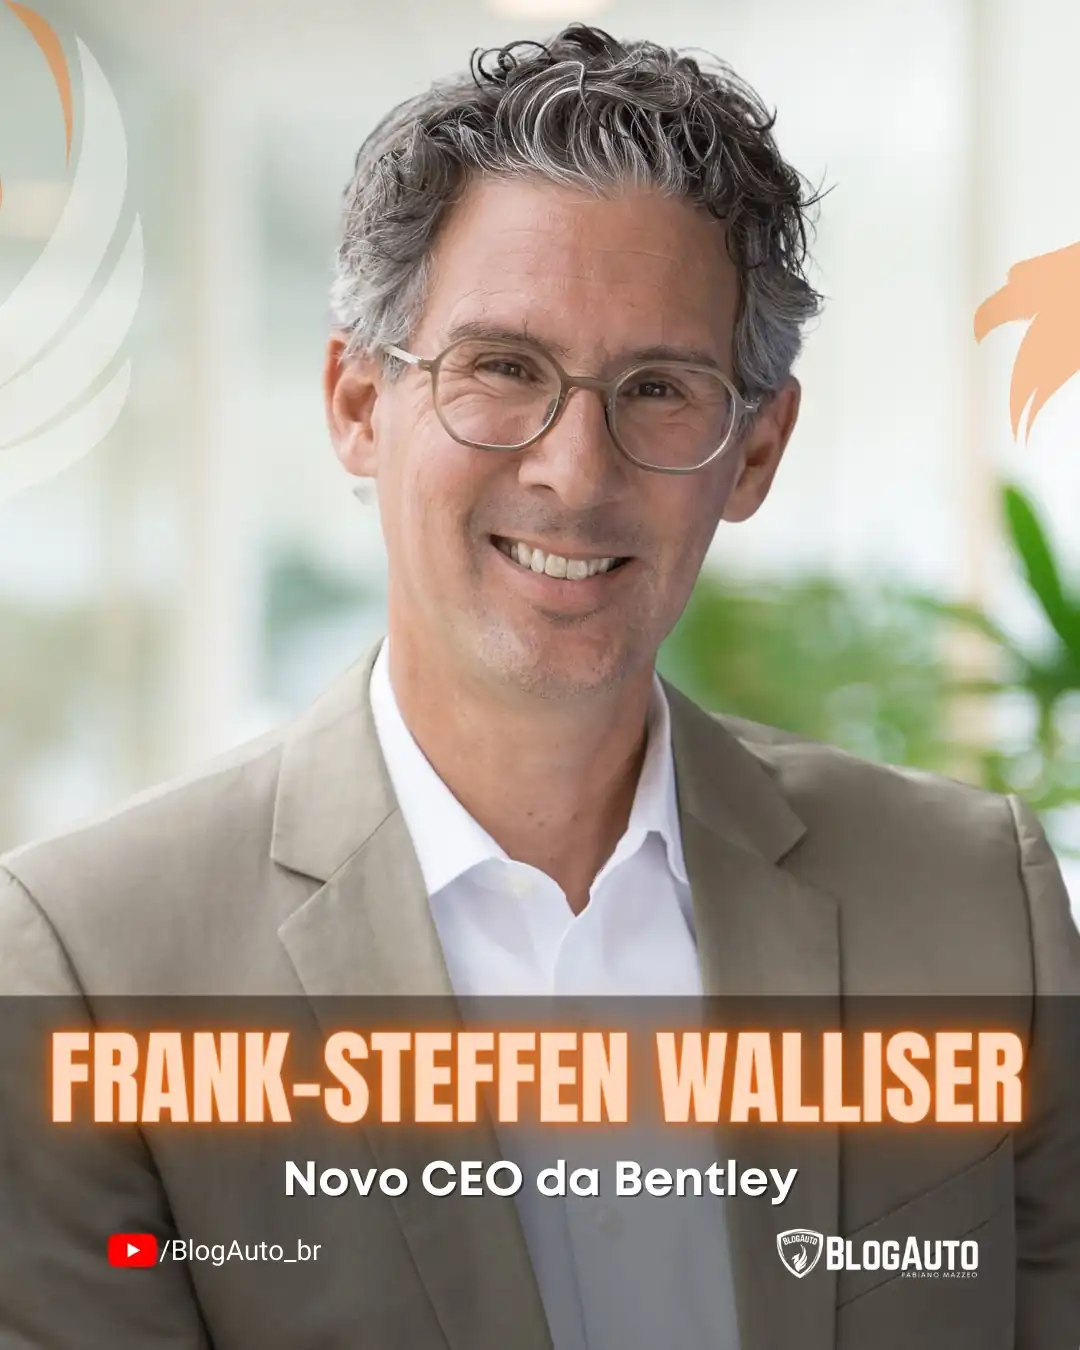 Frank-Steffen Walliser